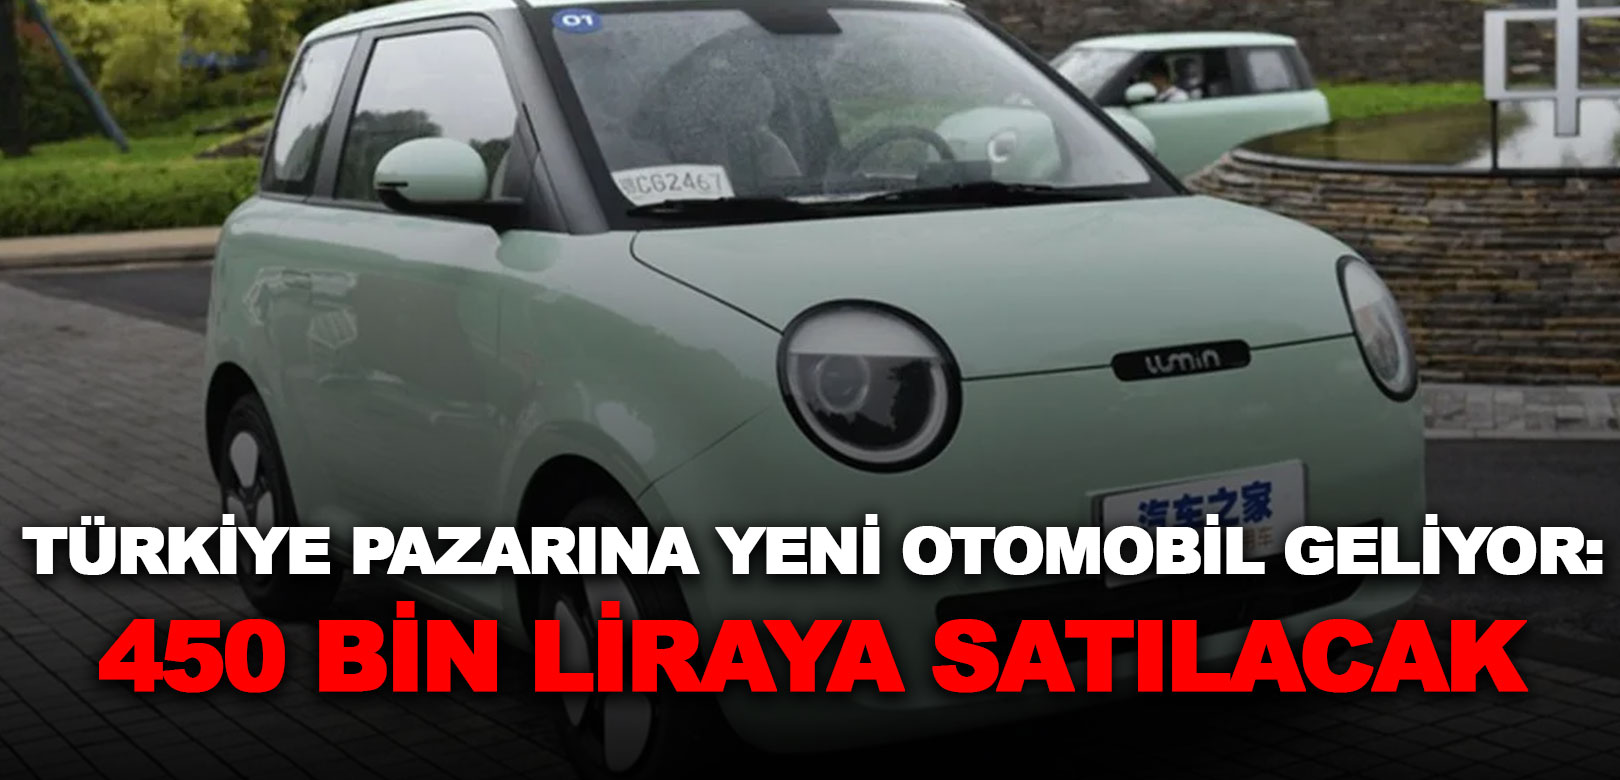 Türkiye pazarına yeni otomobil geliyor: 450 bin liraya satılacak